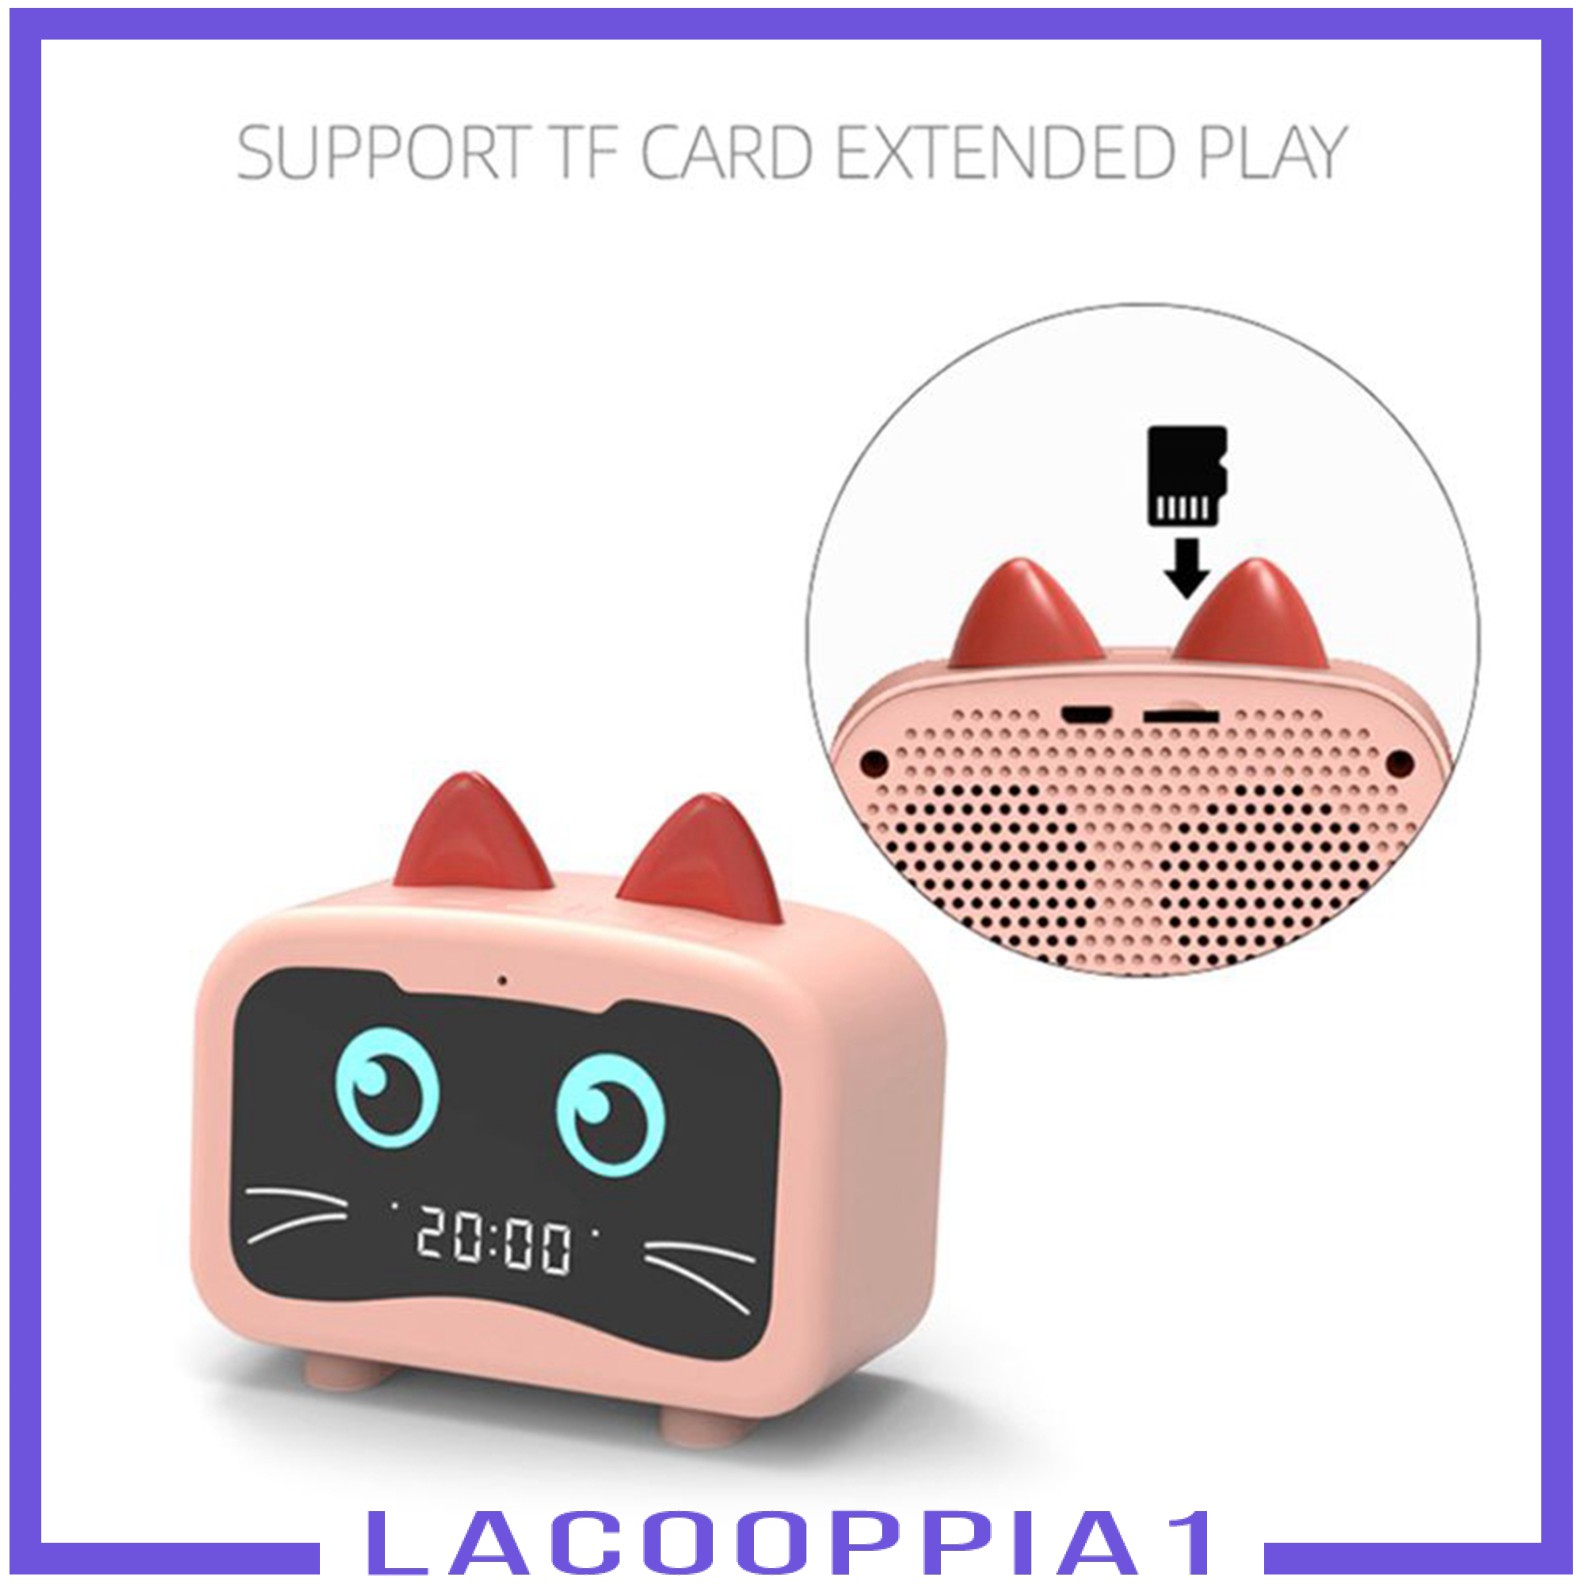 Loa Bluetooth Lapopopia1 Tích Hợp Đồng Hồ Báo Thức Và Phụ Kiện